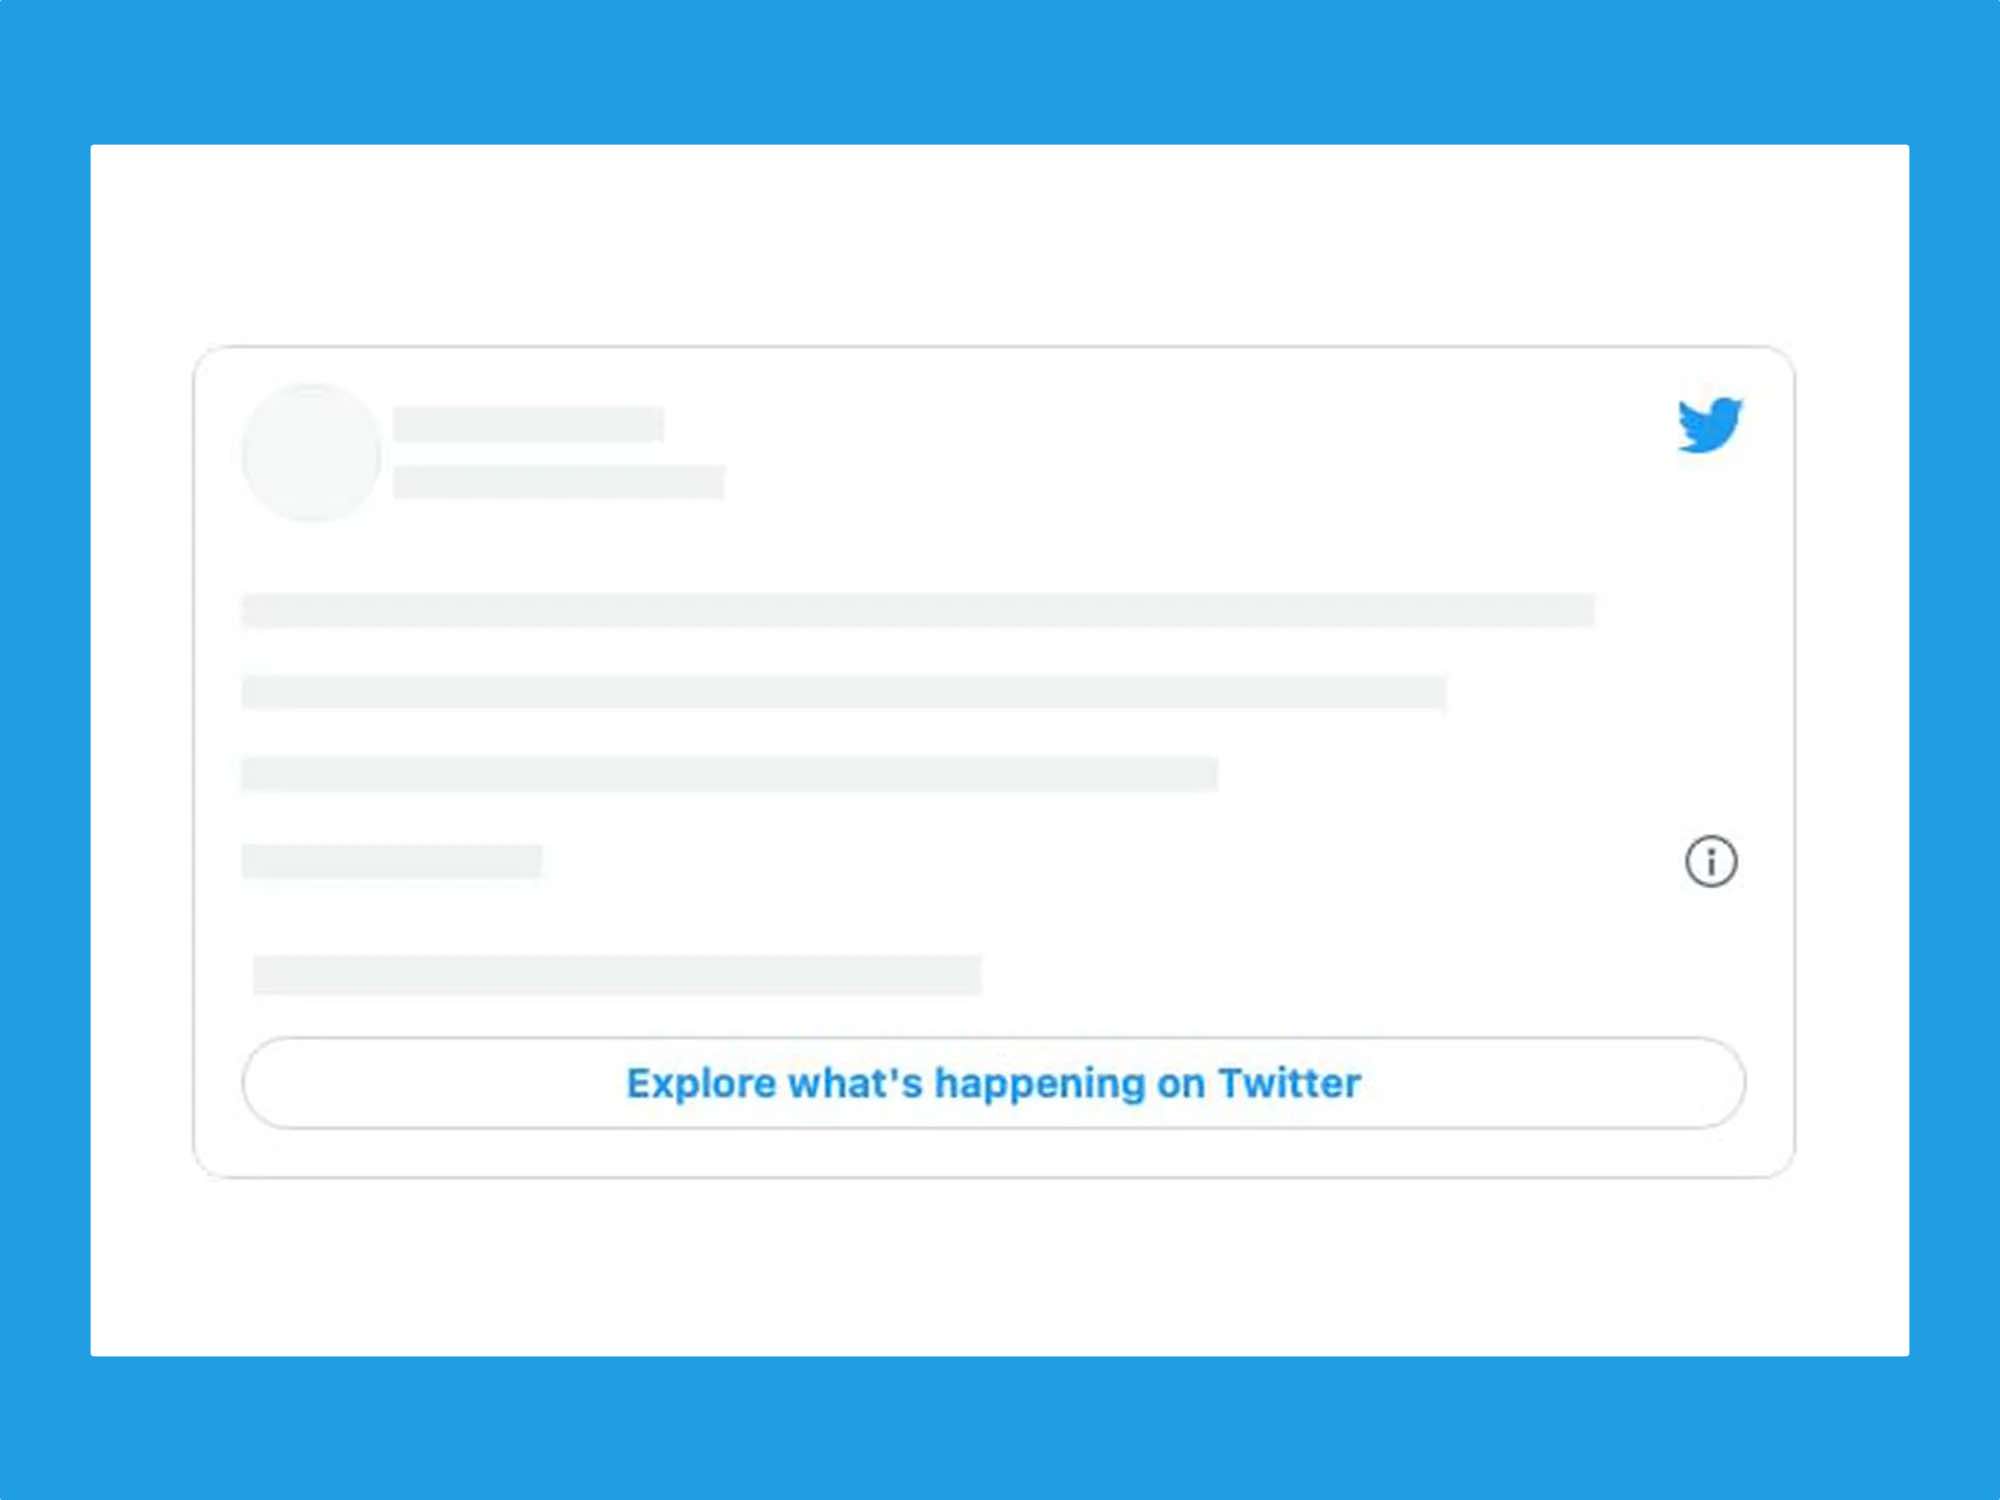 Twitter’ı satır içi tweet’lere değiştirmek web sitelerinde delikler açıyor